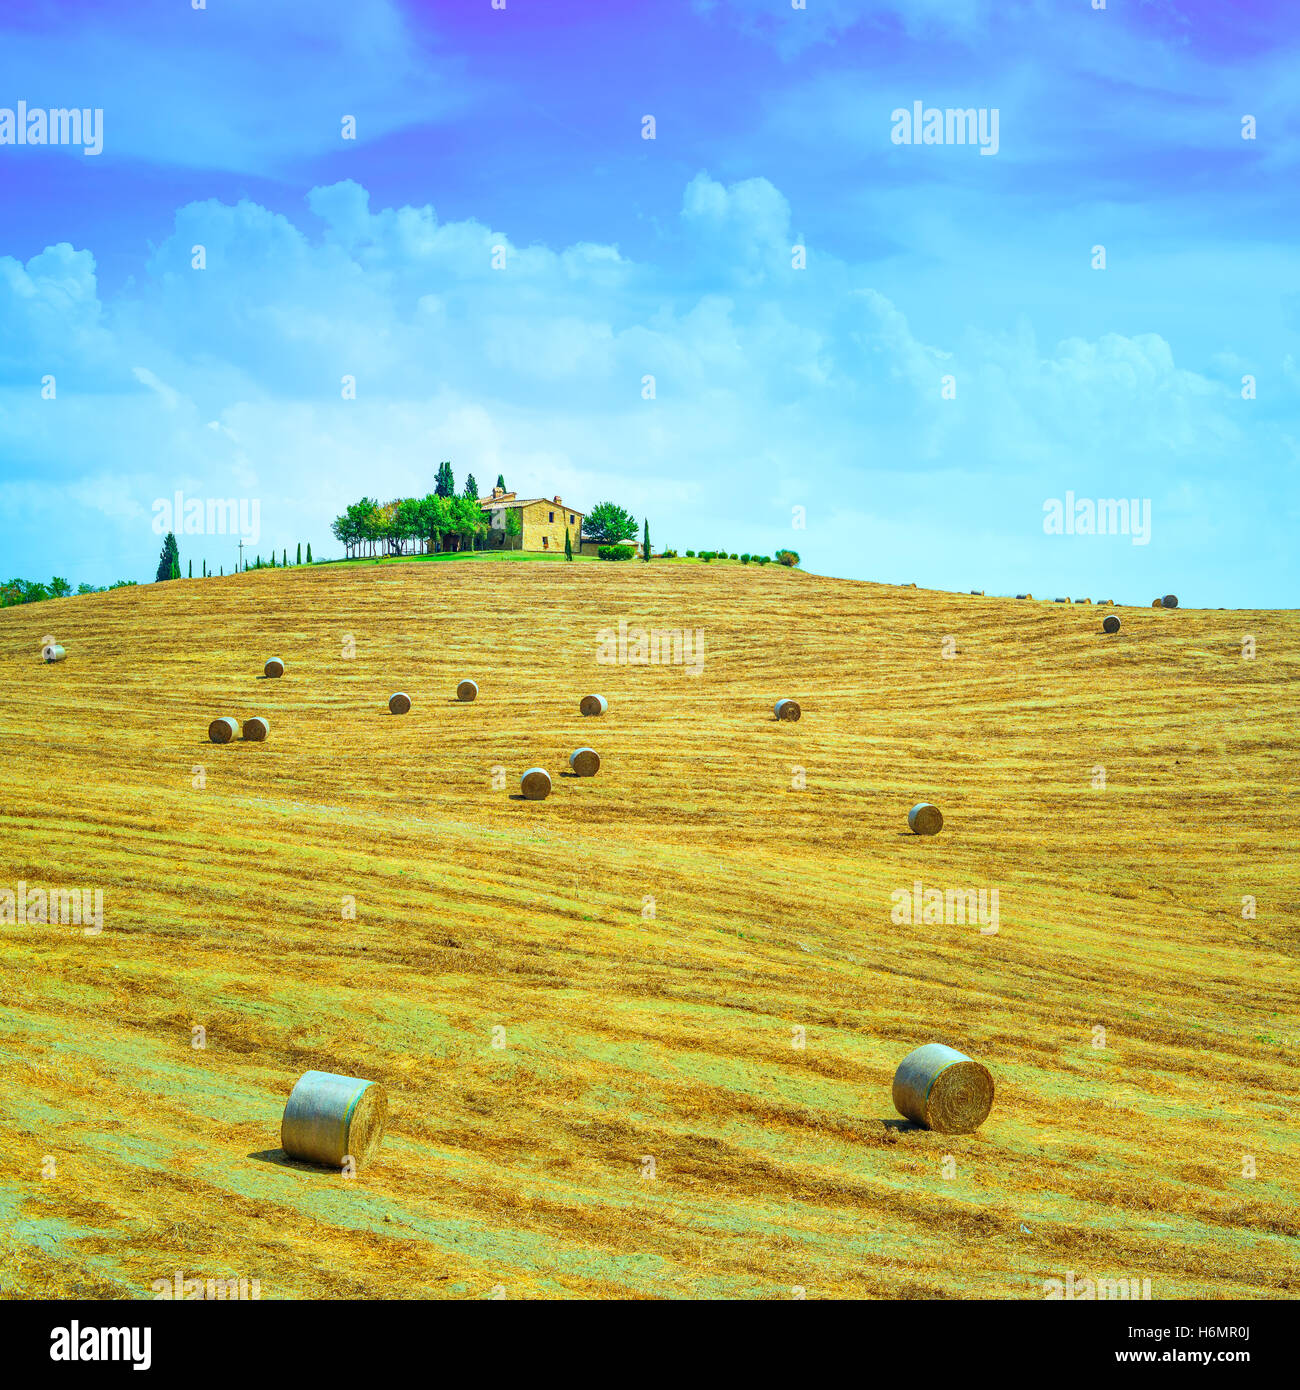 La toscane, pays terres agricoles paysage, sur le dessus de colline, hay rolls et récoltés des champs verts. Val d'Orcia, Italie, Europe. Banque D'Images